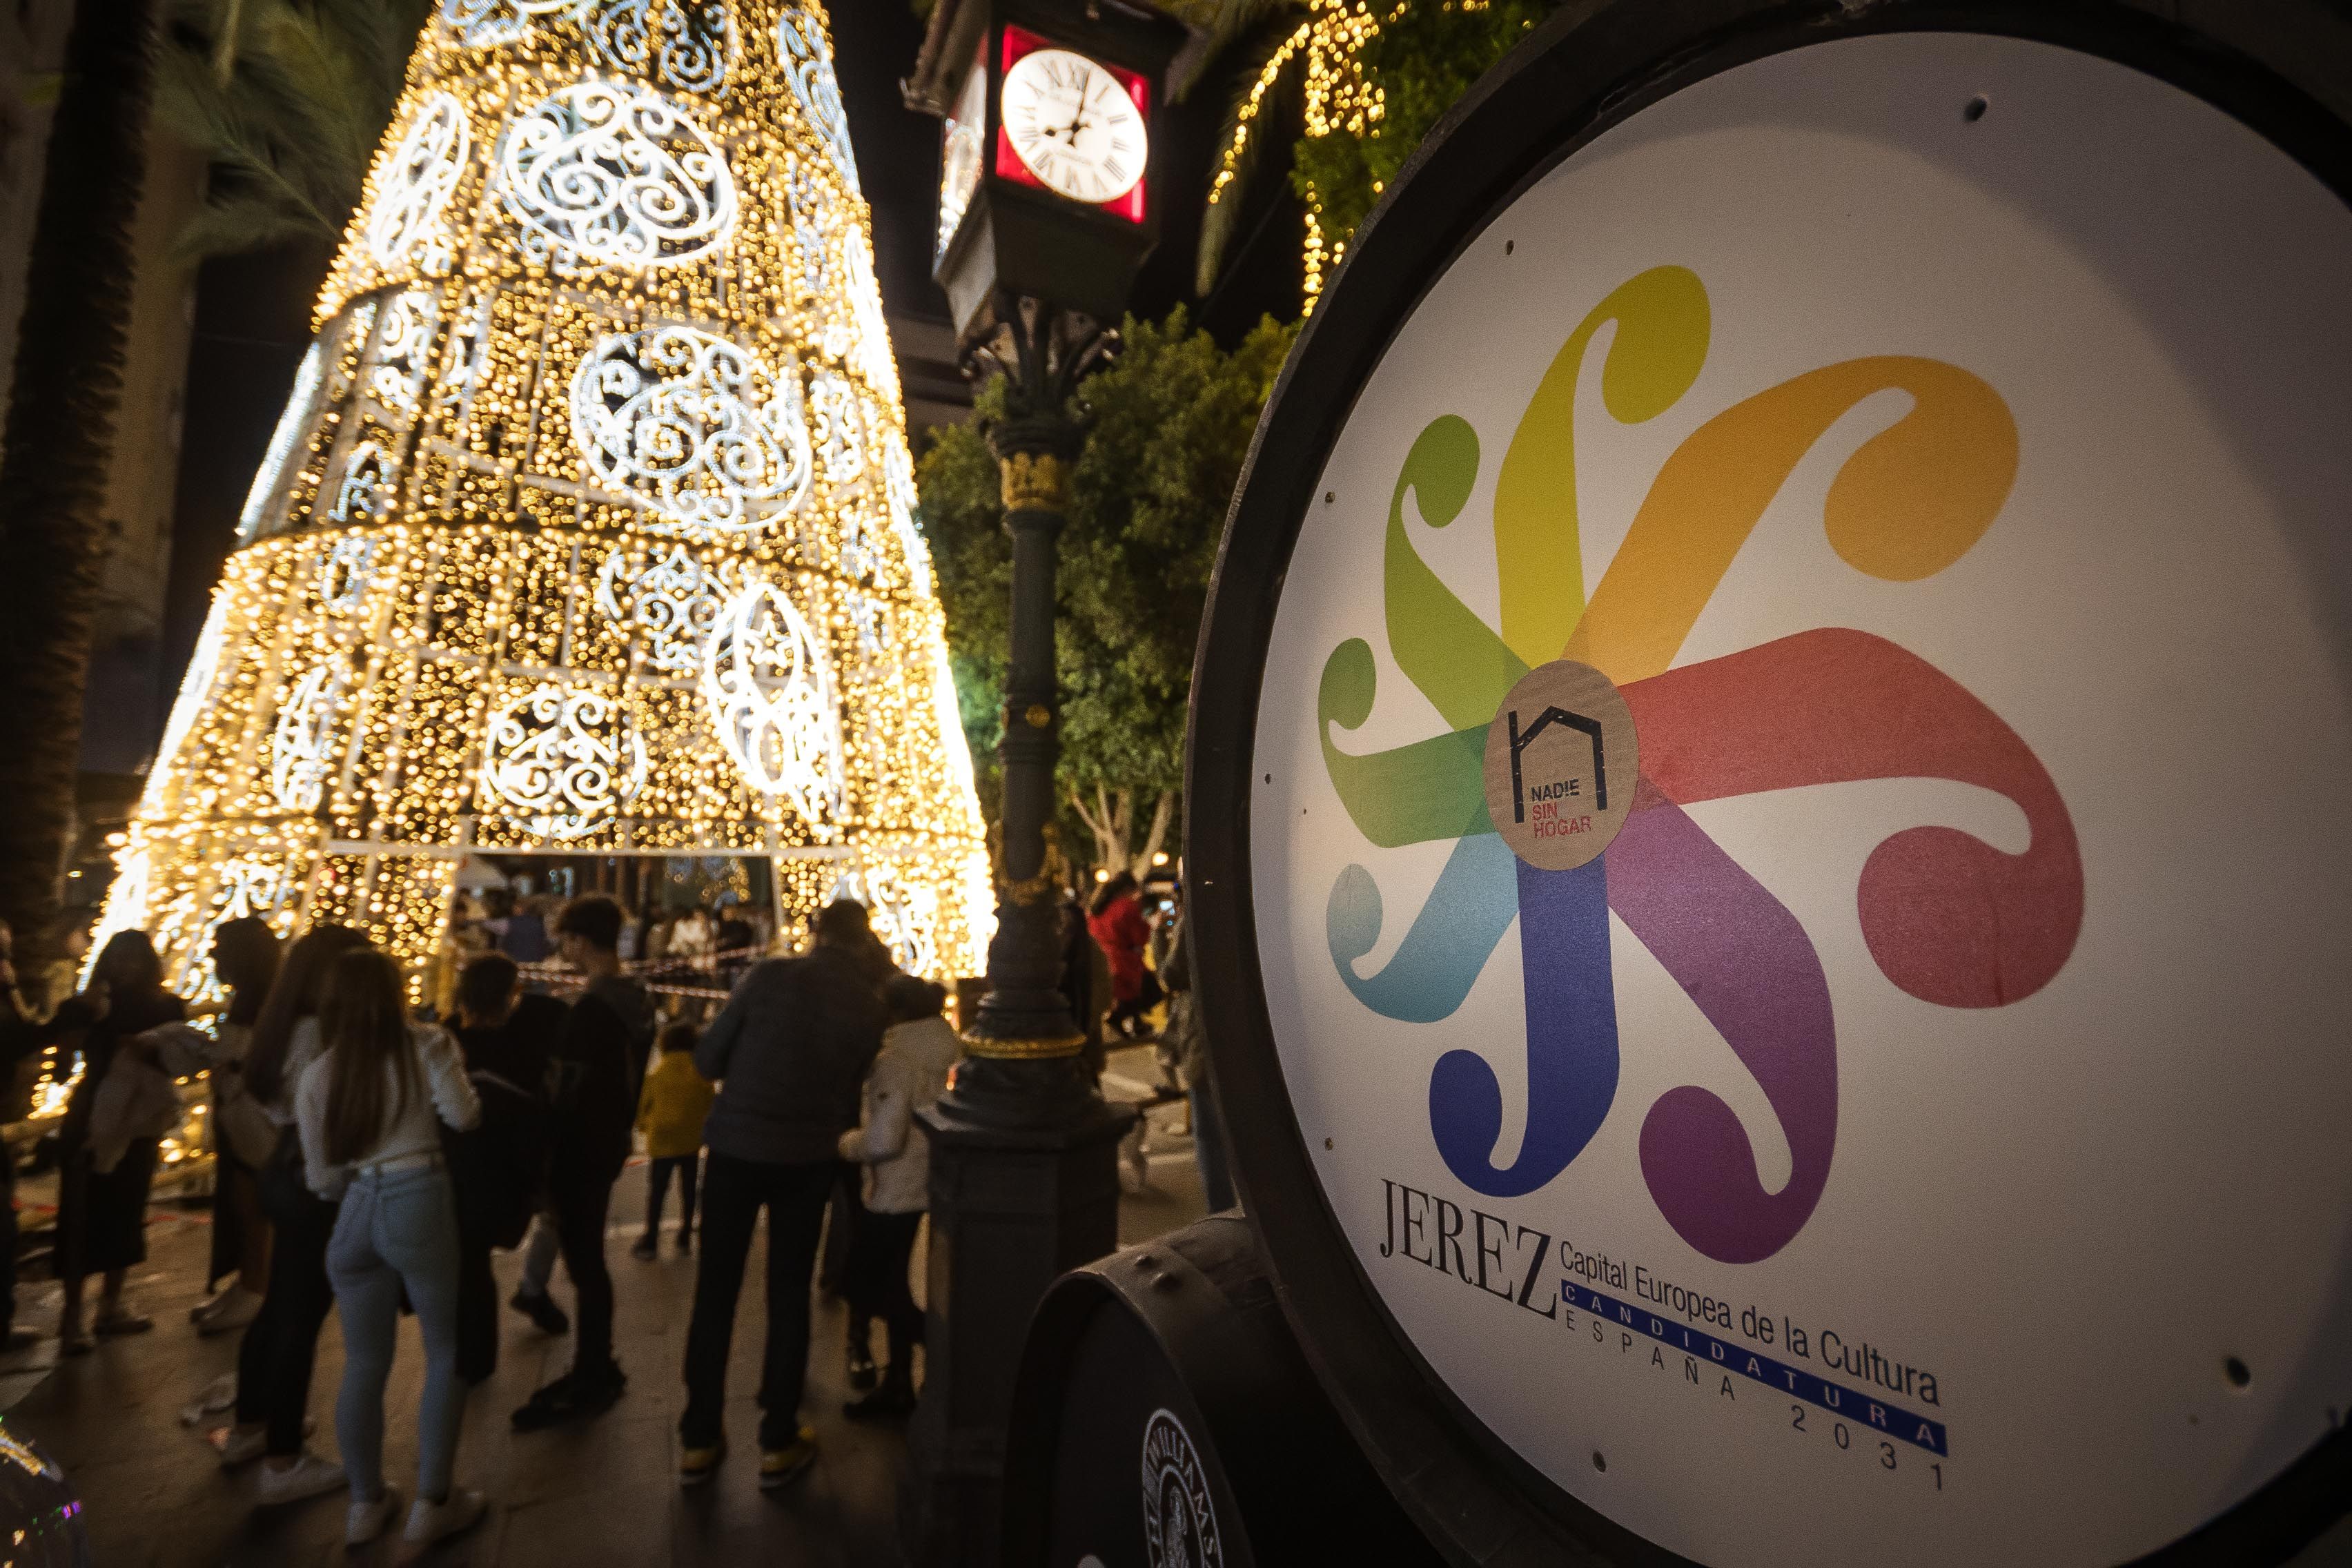 'Tartesia', los cimientos contra reloj que quieren convertir a Jerez en Capital de la Cultura 2031. En la imagen, una bota de vino con el logo de la Capitalidad, junto al mítico reloj de Losada y el árbol de Navidad del Arenal, recién inaugurado.